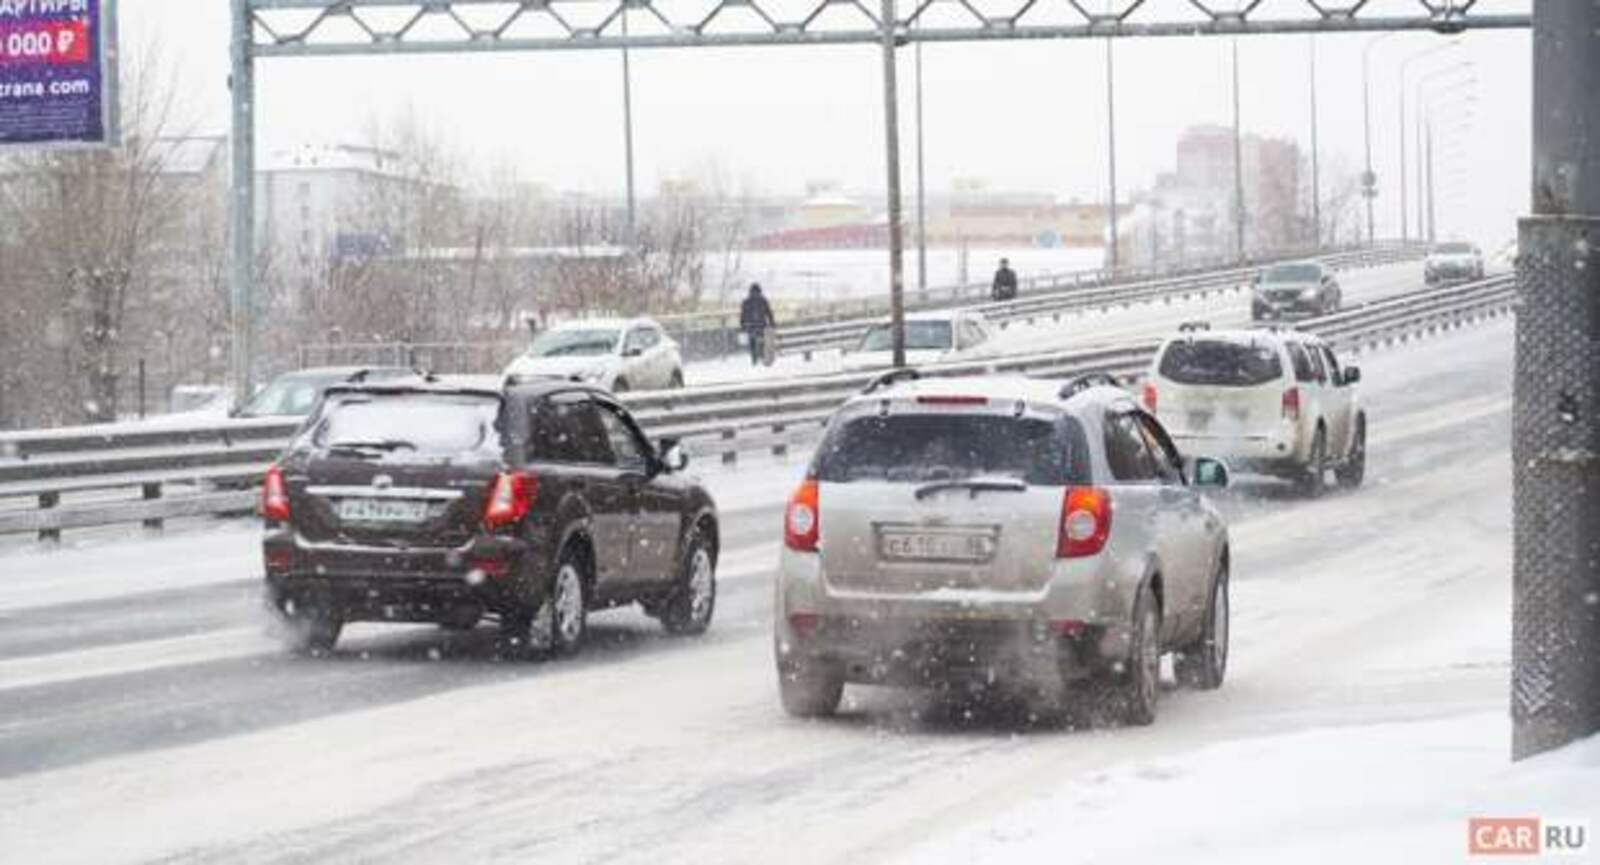 «Нужно ездить медленно и печально». Как не попасть в ДТП, когда на дорогах снежный ад?